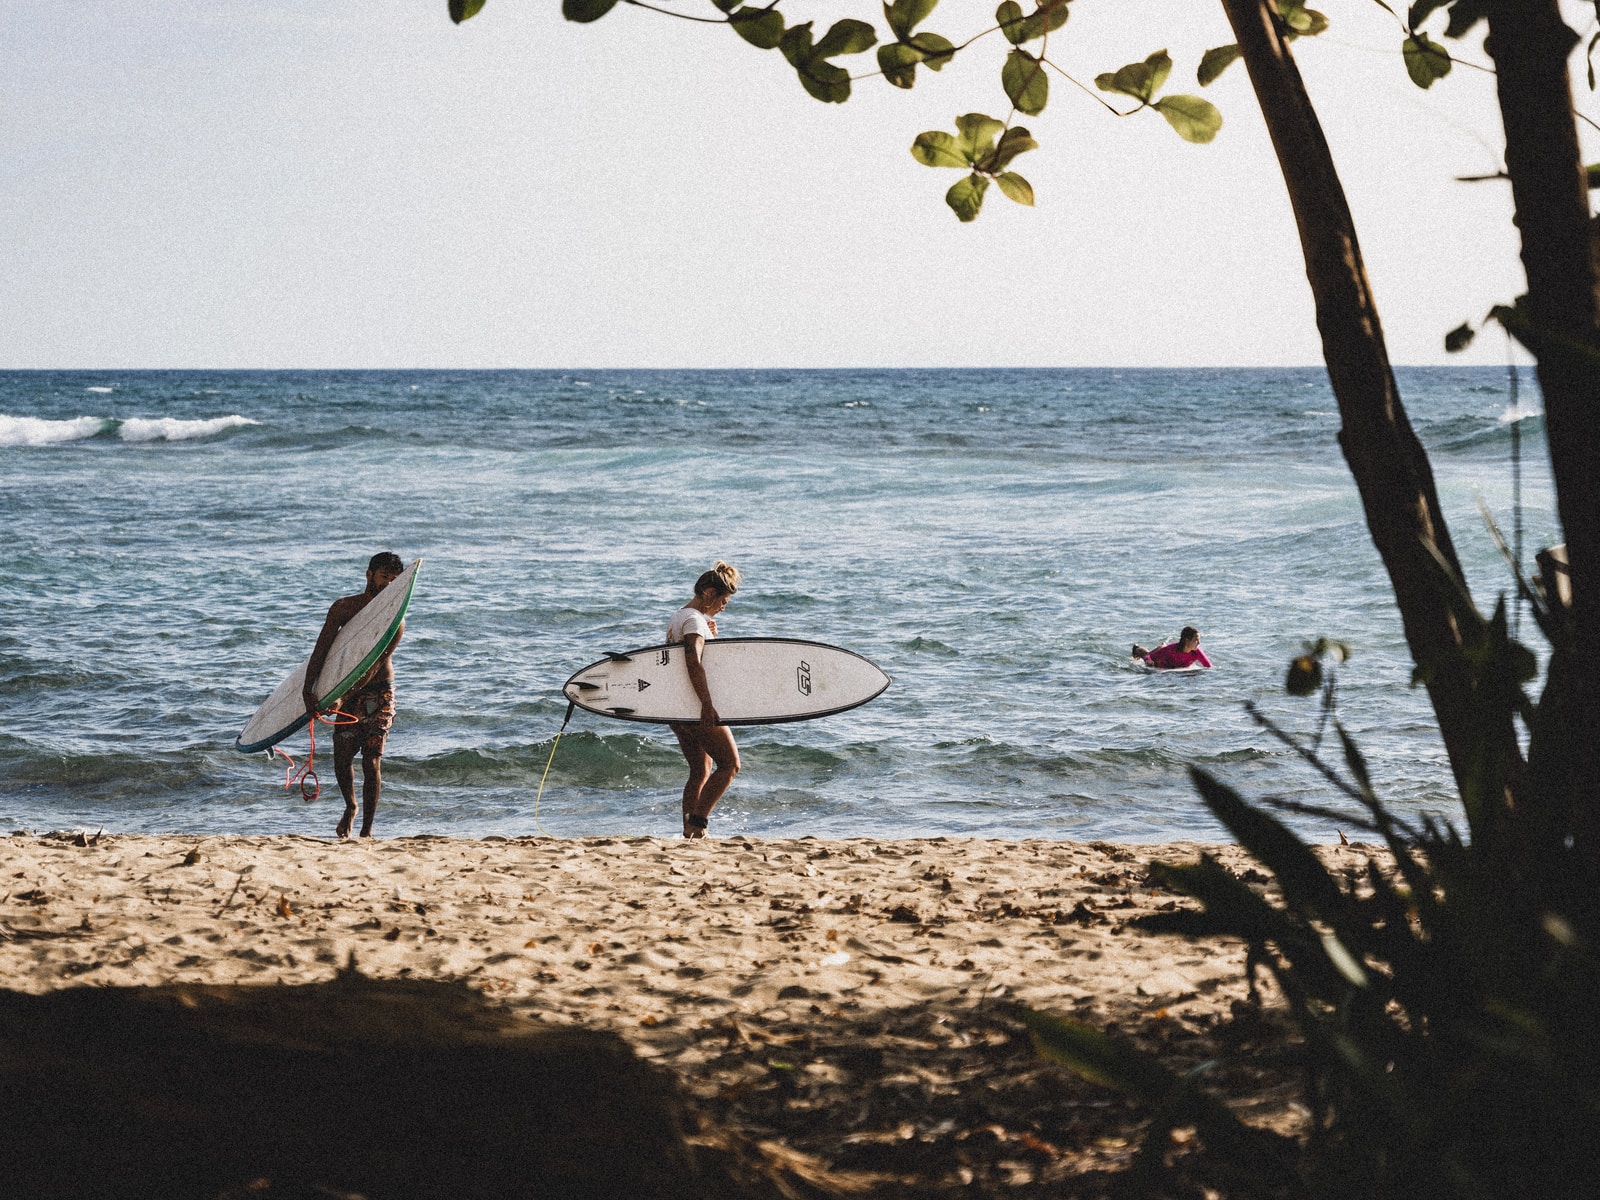 2 men holding white surfboard walking on beach shore during daytime